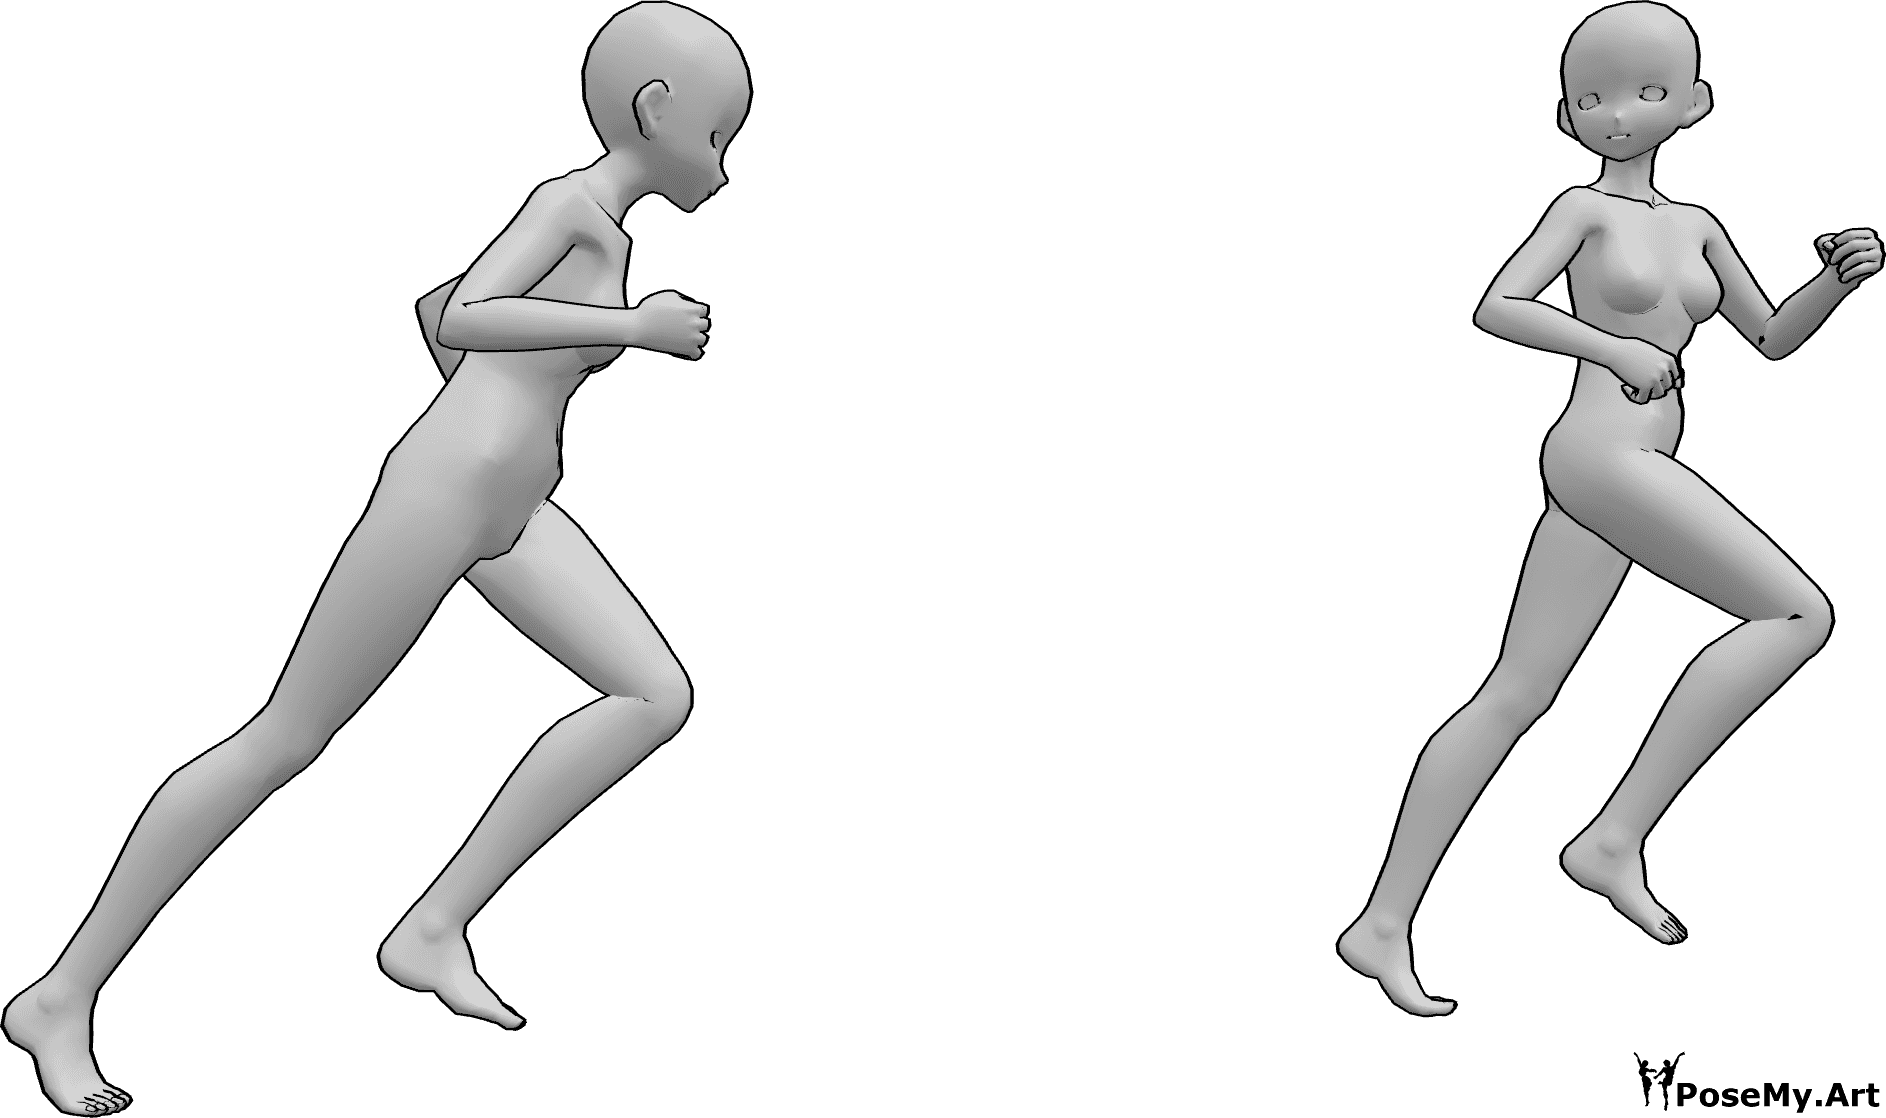 Referência de poses- Pose de perseguição de anime a correr - Duas mulheres de anime estão a correr, uma está a perseguir a outra, que está a olhar para trás enquanto foge